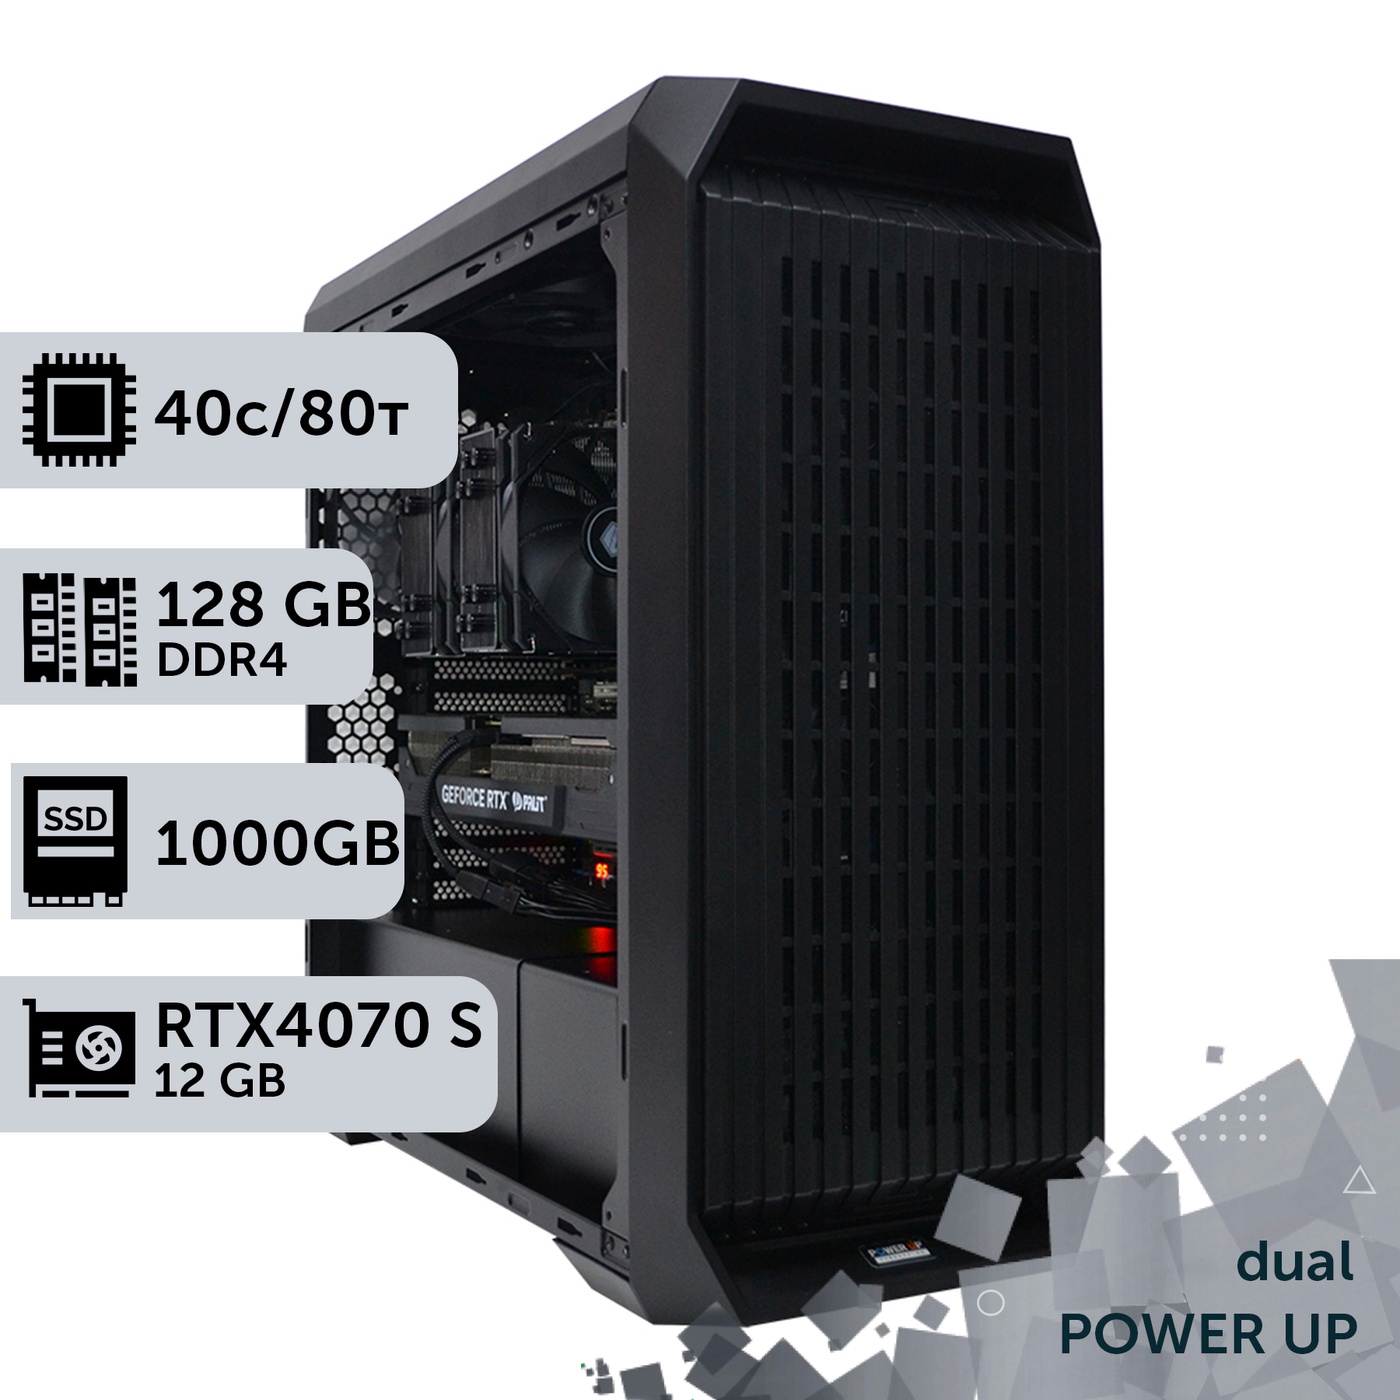 Двухпроцессорная рабочая станция PowerUp #417 Xeon E5 2673 v4 x2/128 GB/SSD 1TB/GeForce RTX 4070 Super 12GB